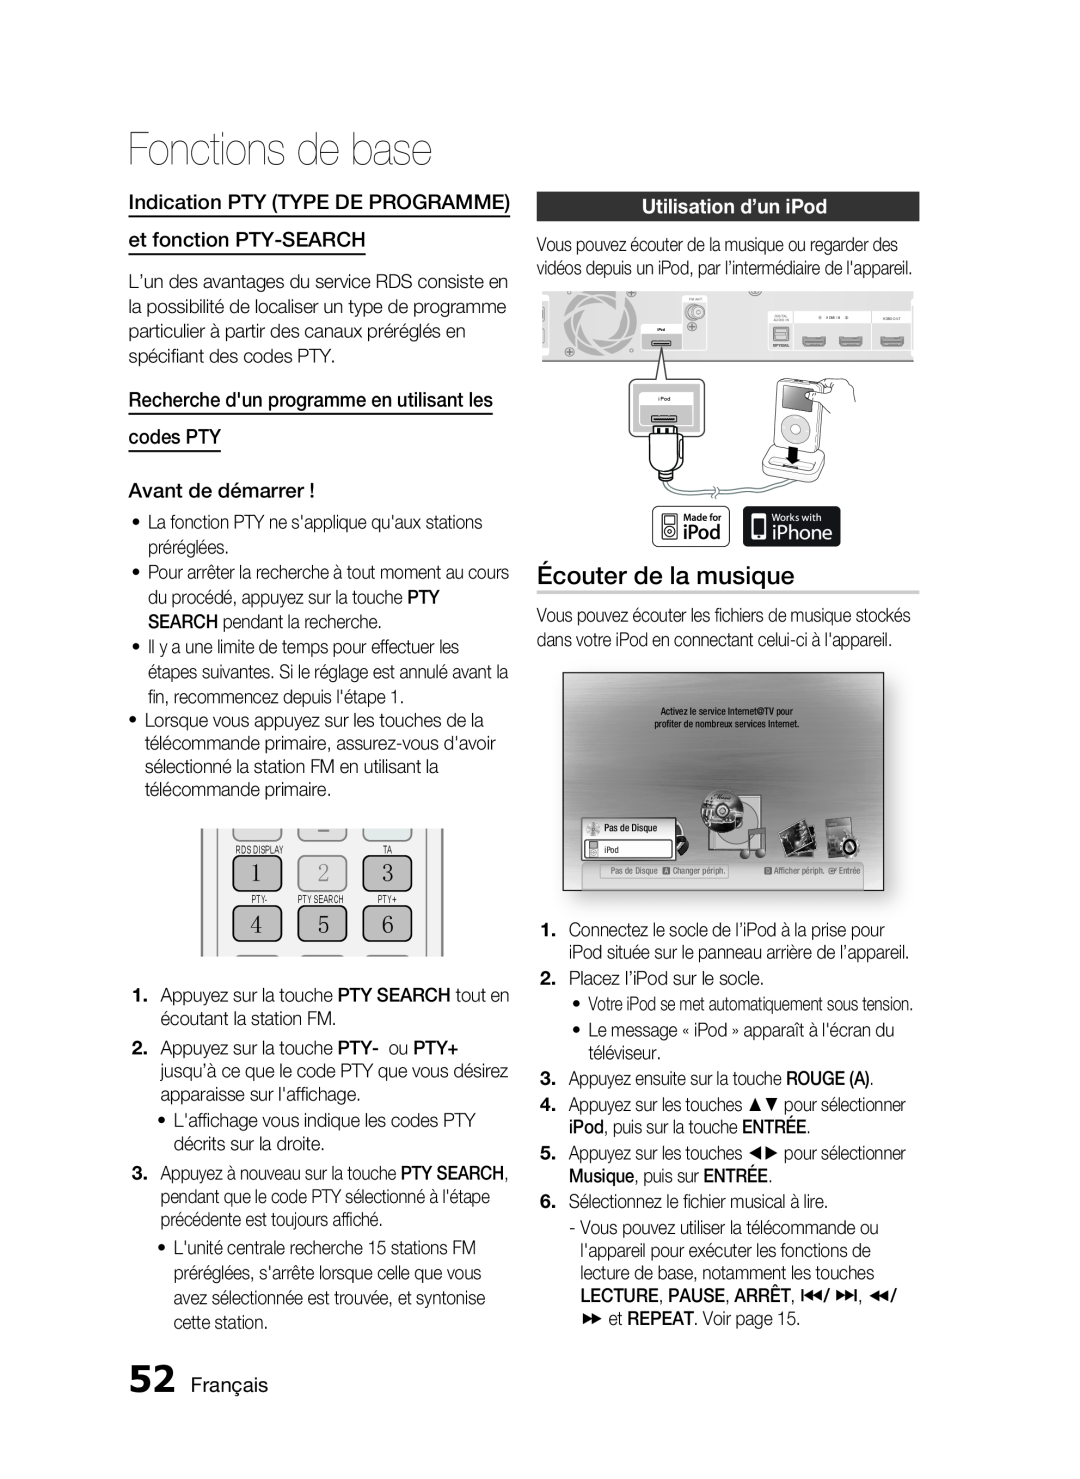 Samsung HT-C6200/XEF manual 㪋 㪌 㪍, Écouter de la musique, Indication PTY TYPE DE PROGRAMME et fonction PTY-SEARCH, Français 